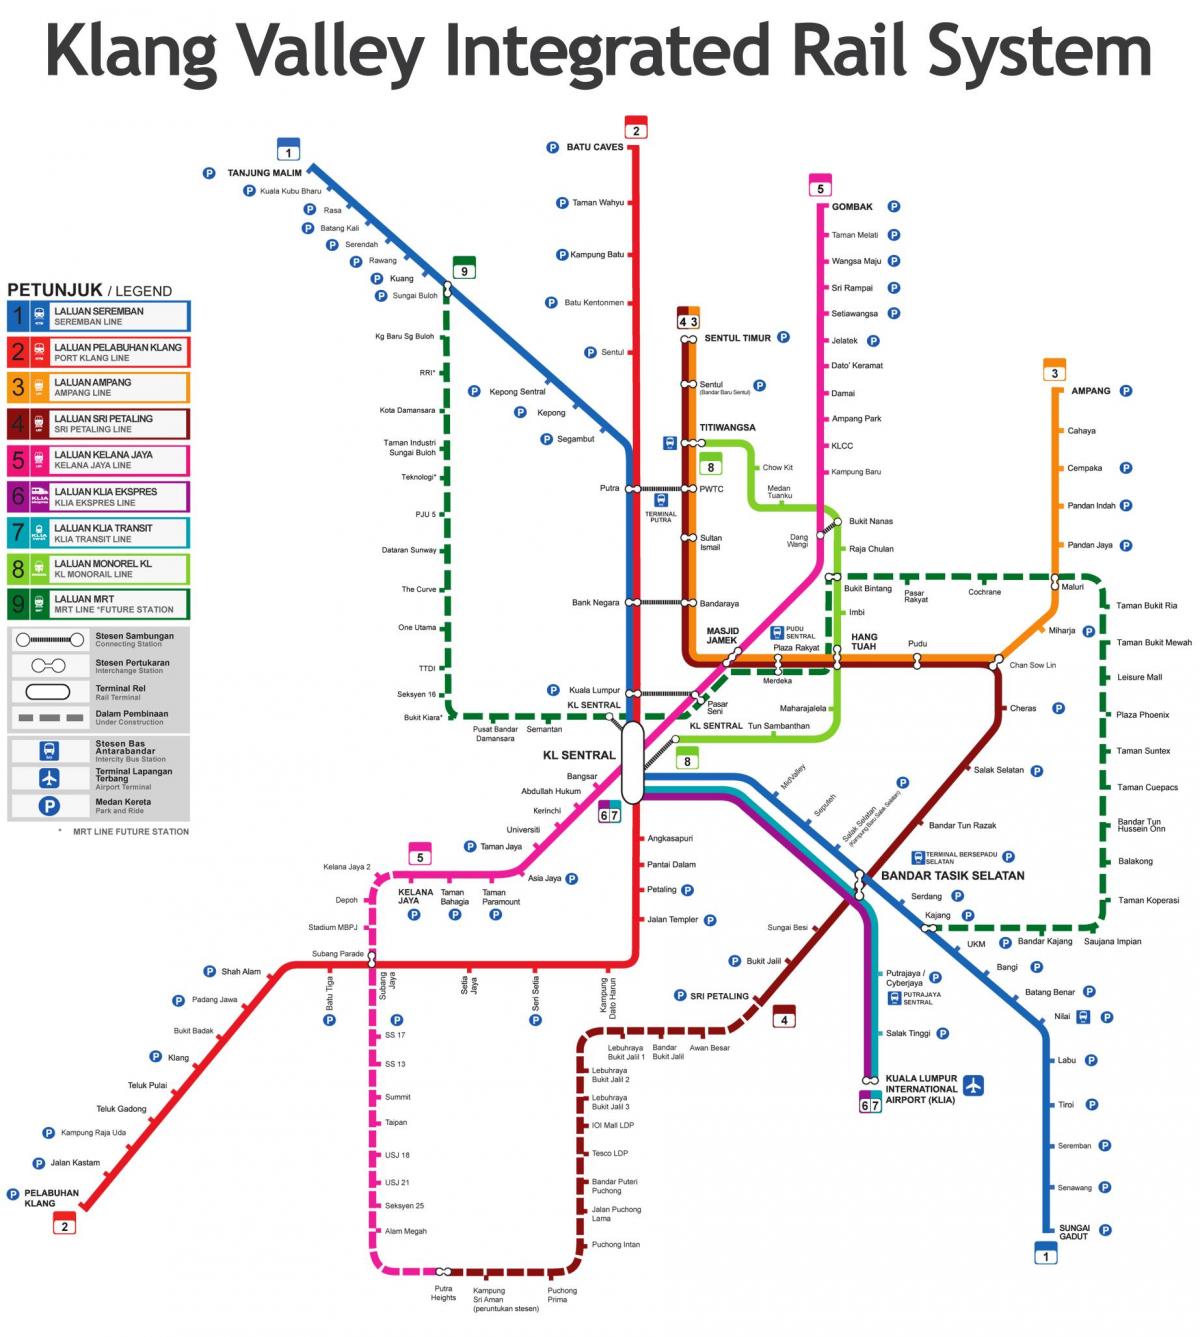 Malezja dworzec kolejowy mapie